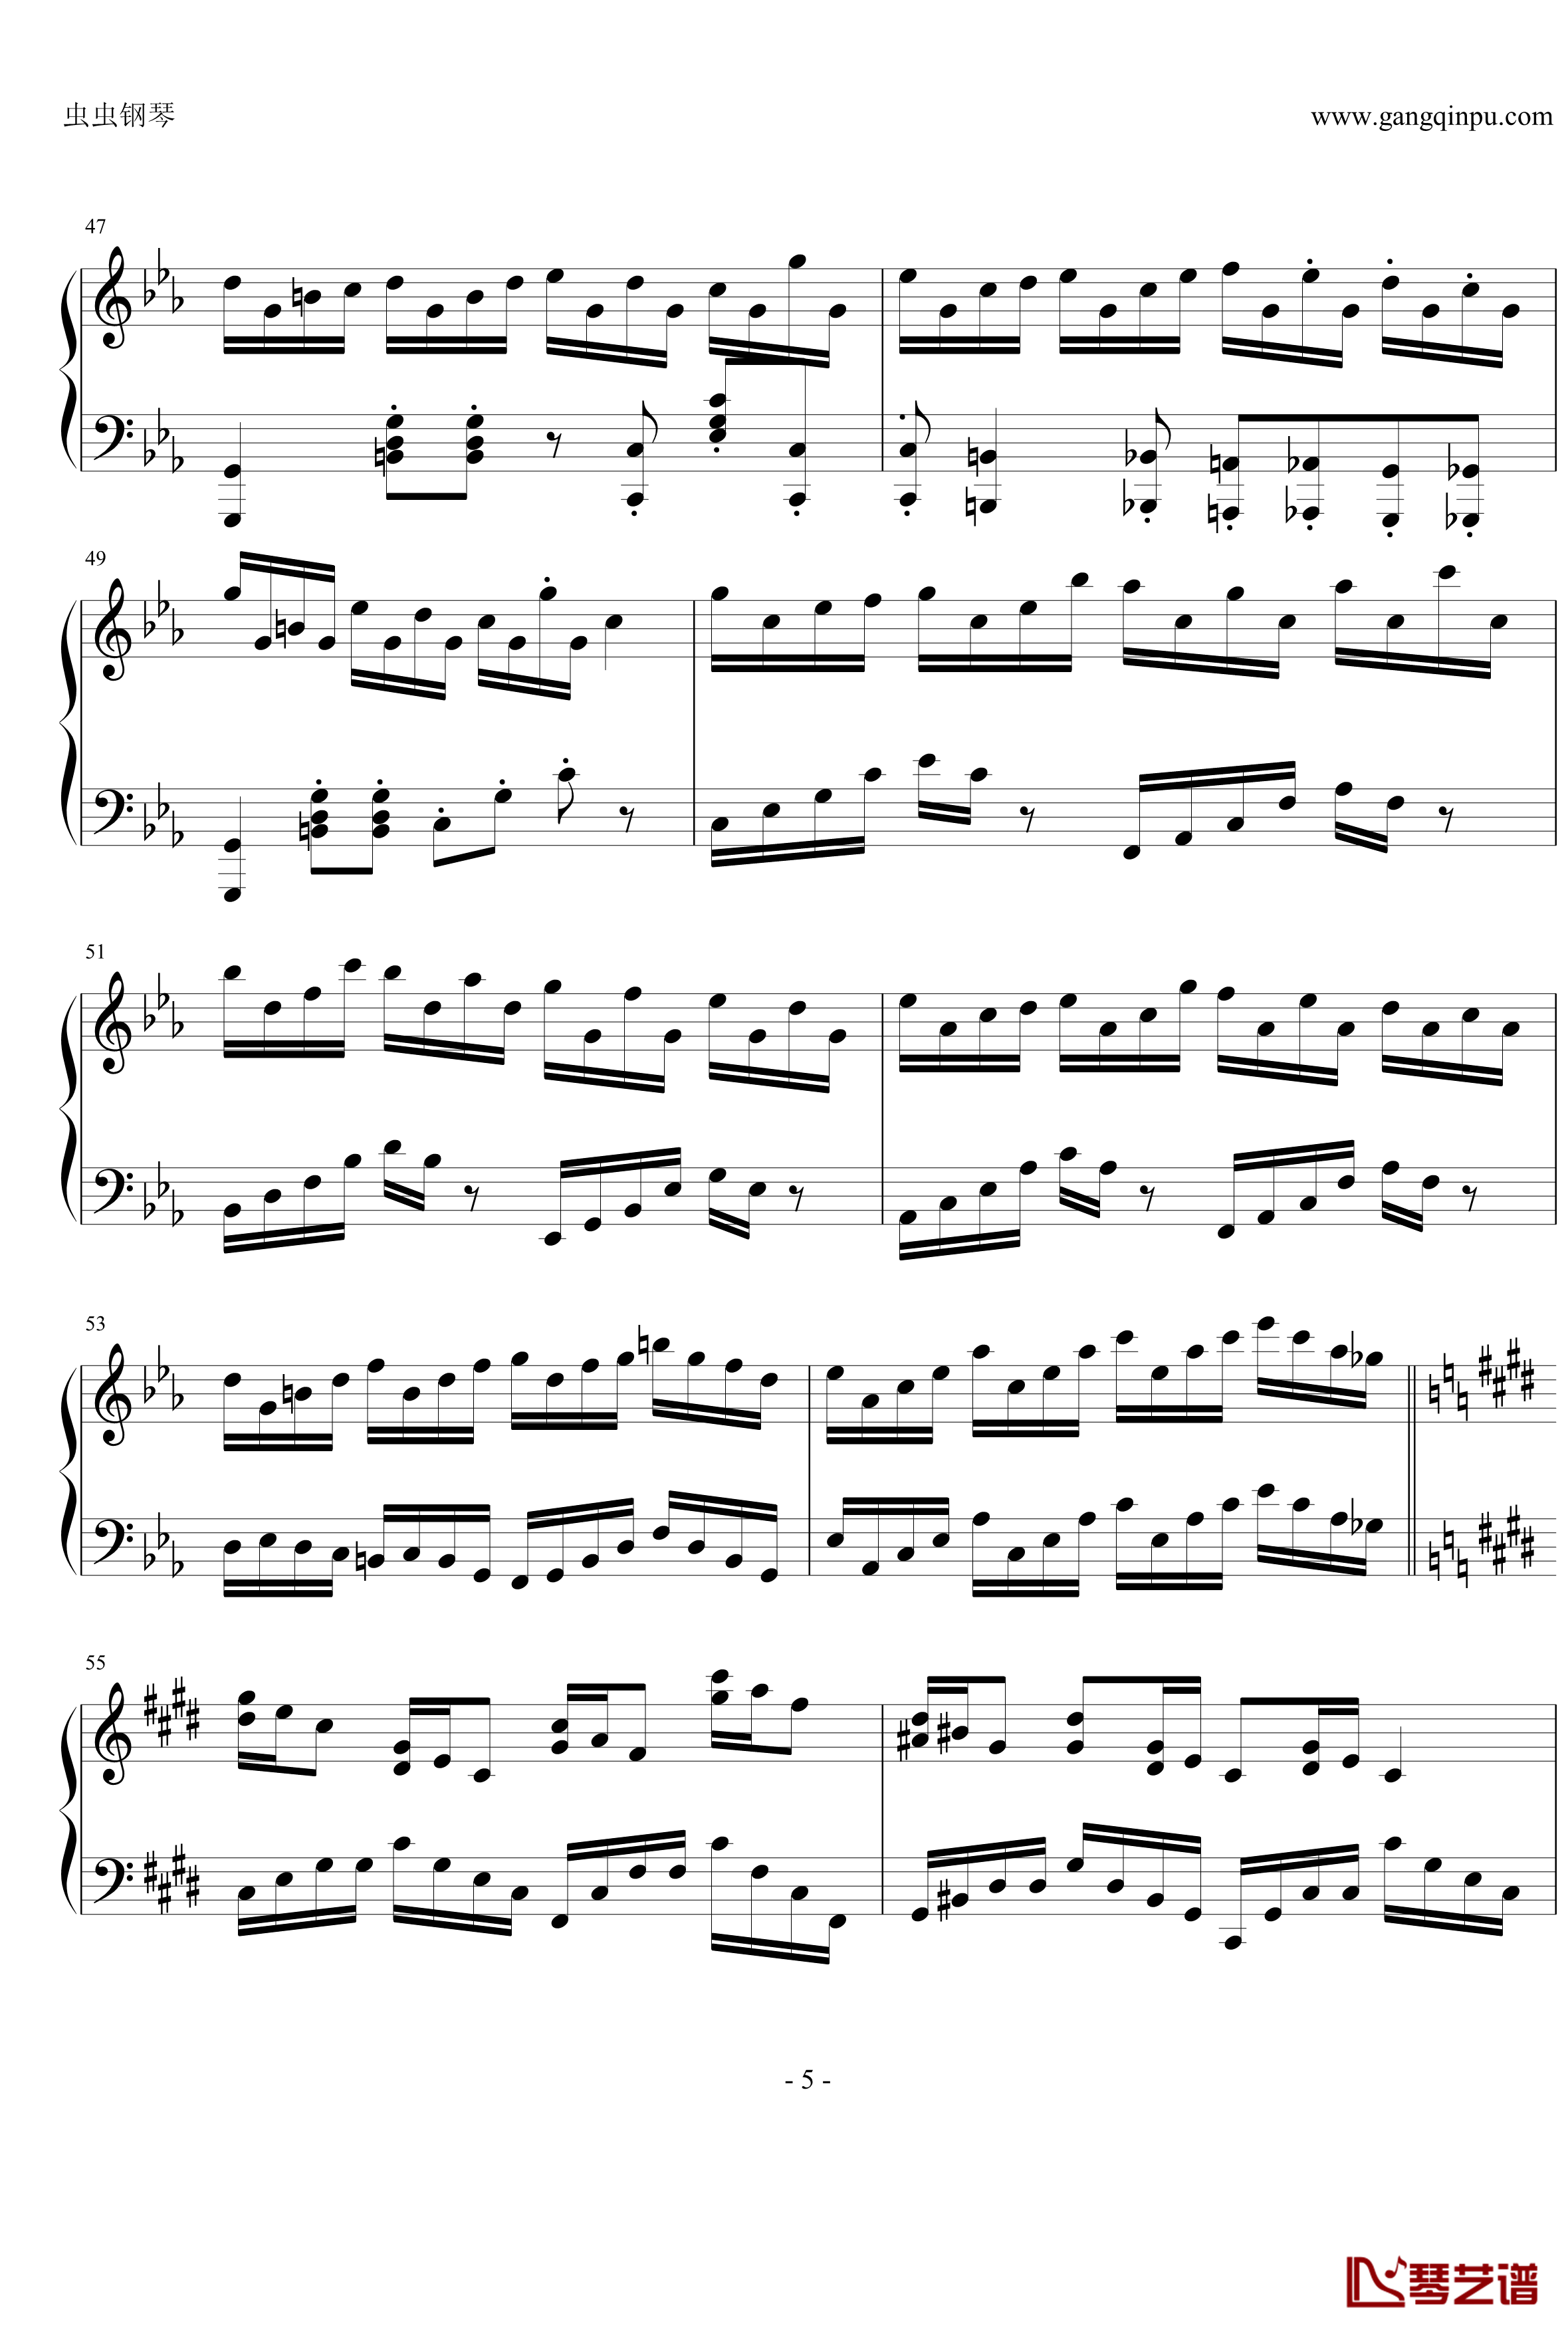 克罗地亚狂想曲钢琴谱-改编独奏版-马克西姆-Maksim·Mrvica5